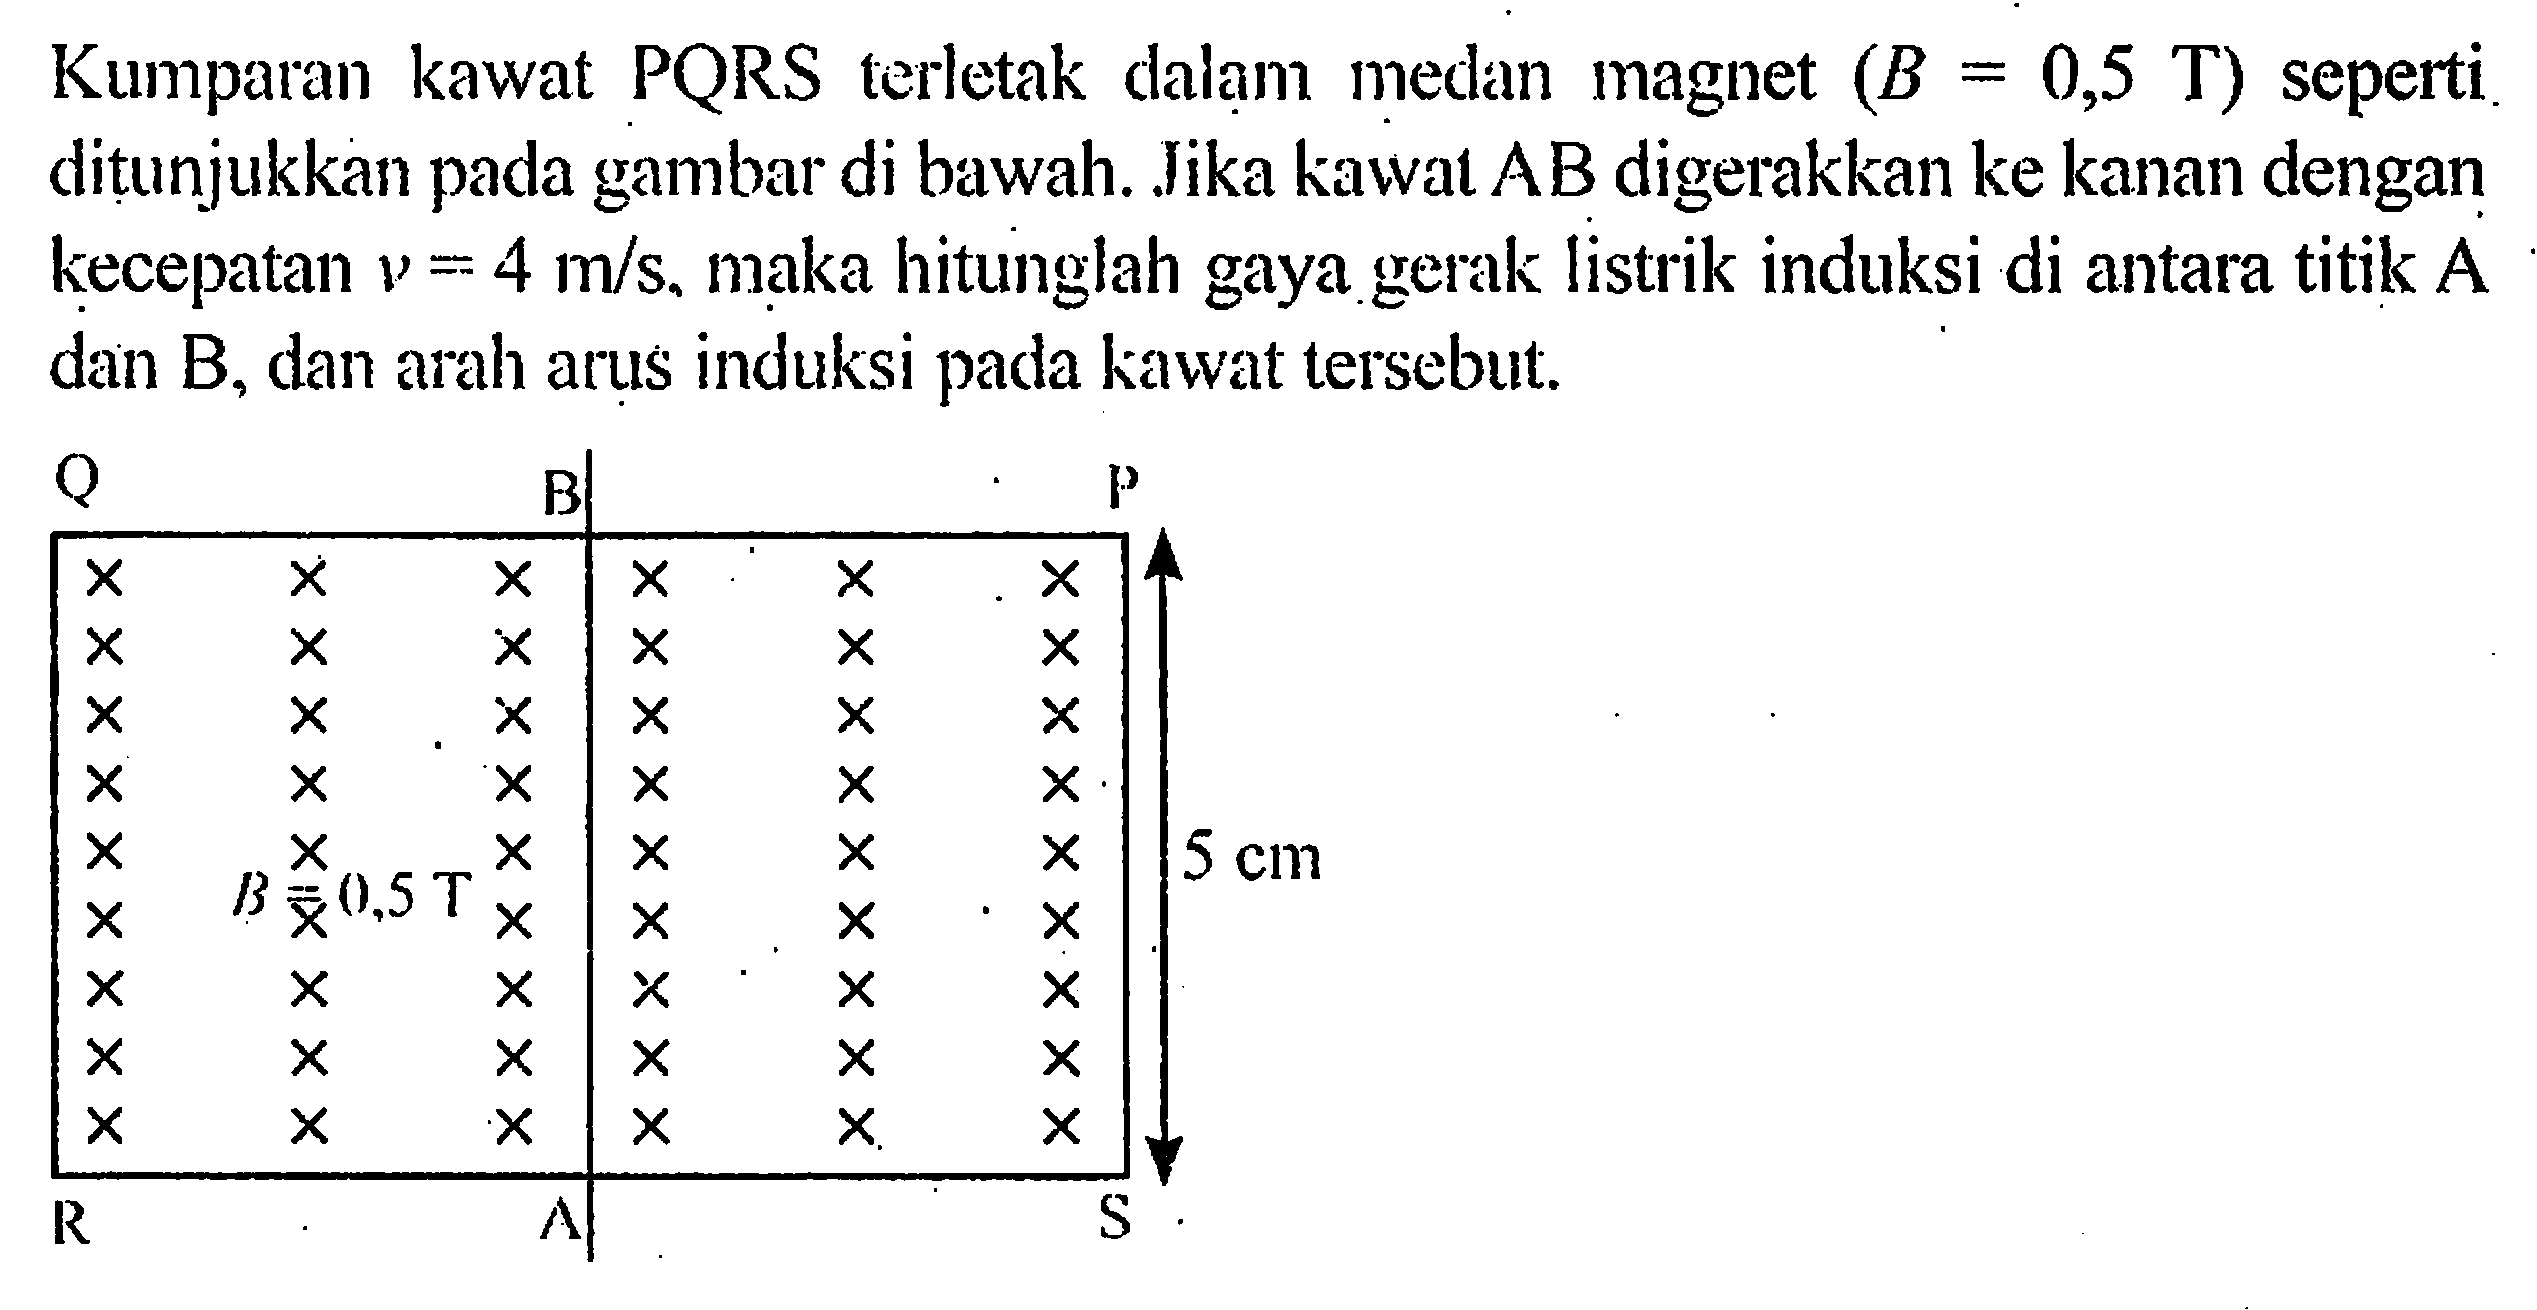 Kumparan kawat PQRS terletak dalam medan magnet (B 0,5 T) seperti ditunjukkan pada gambar di bawah. Jika kawal AB digerakkan ke kanan dengan kecepatan V = 4 m/s. maka hitunglah gaya listrik induksi di antara titik A dan B, dan arah arus induksi pada kawat tersebut. Q B P R A S B = 0,5 T 5 cm